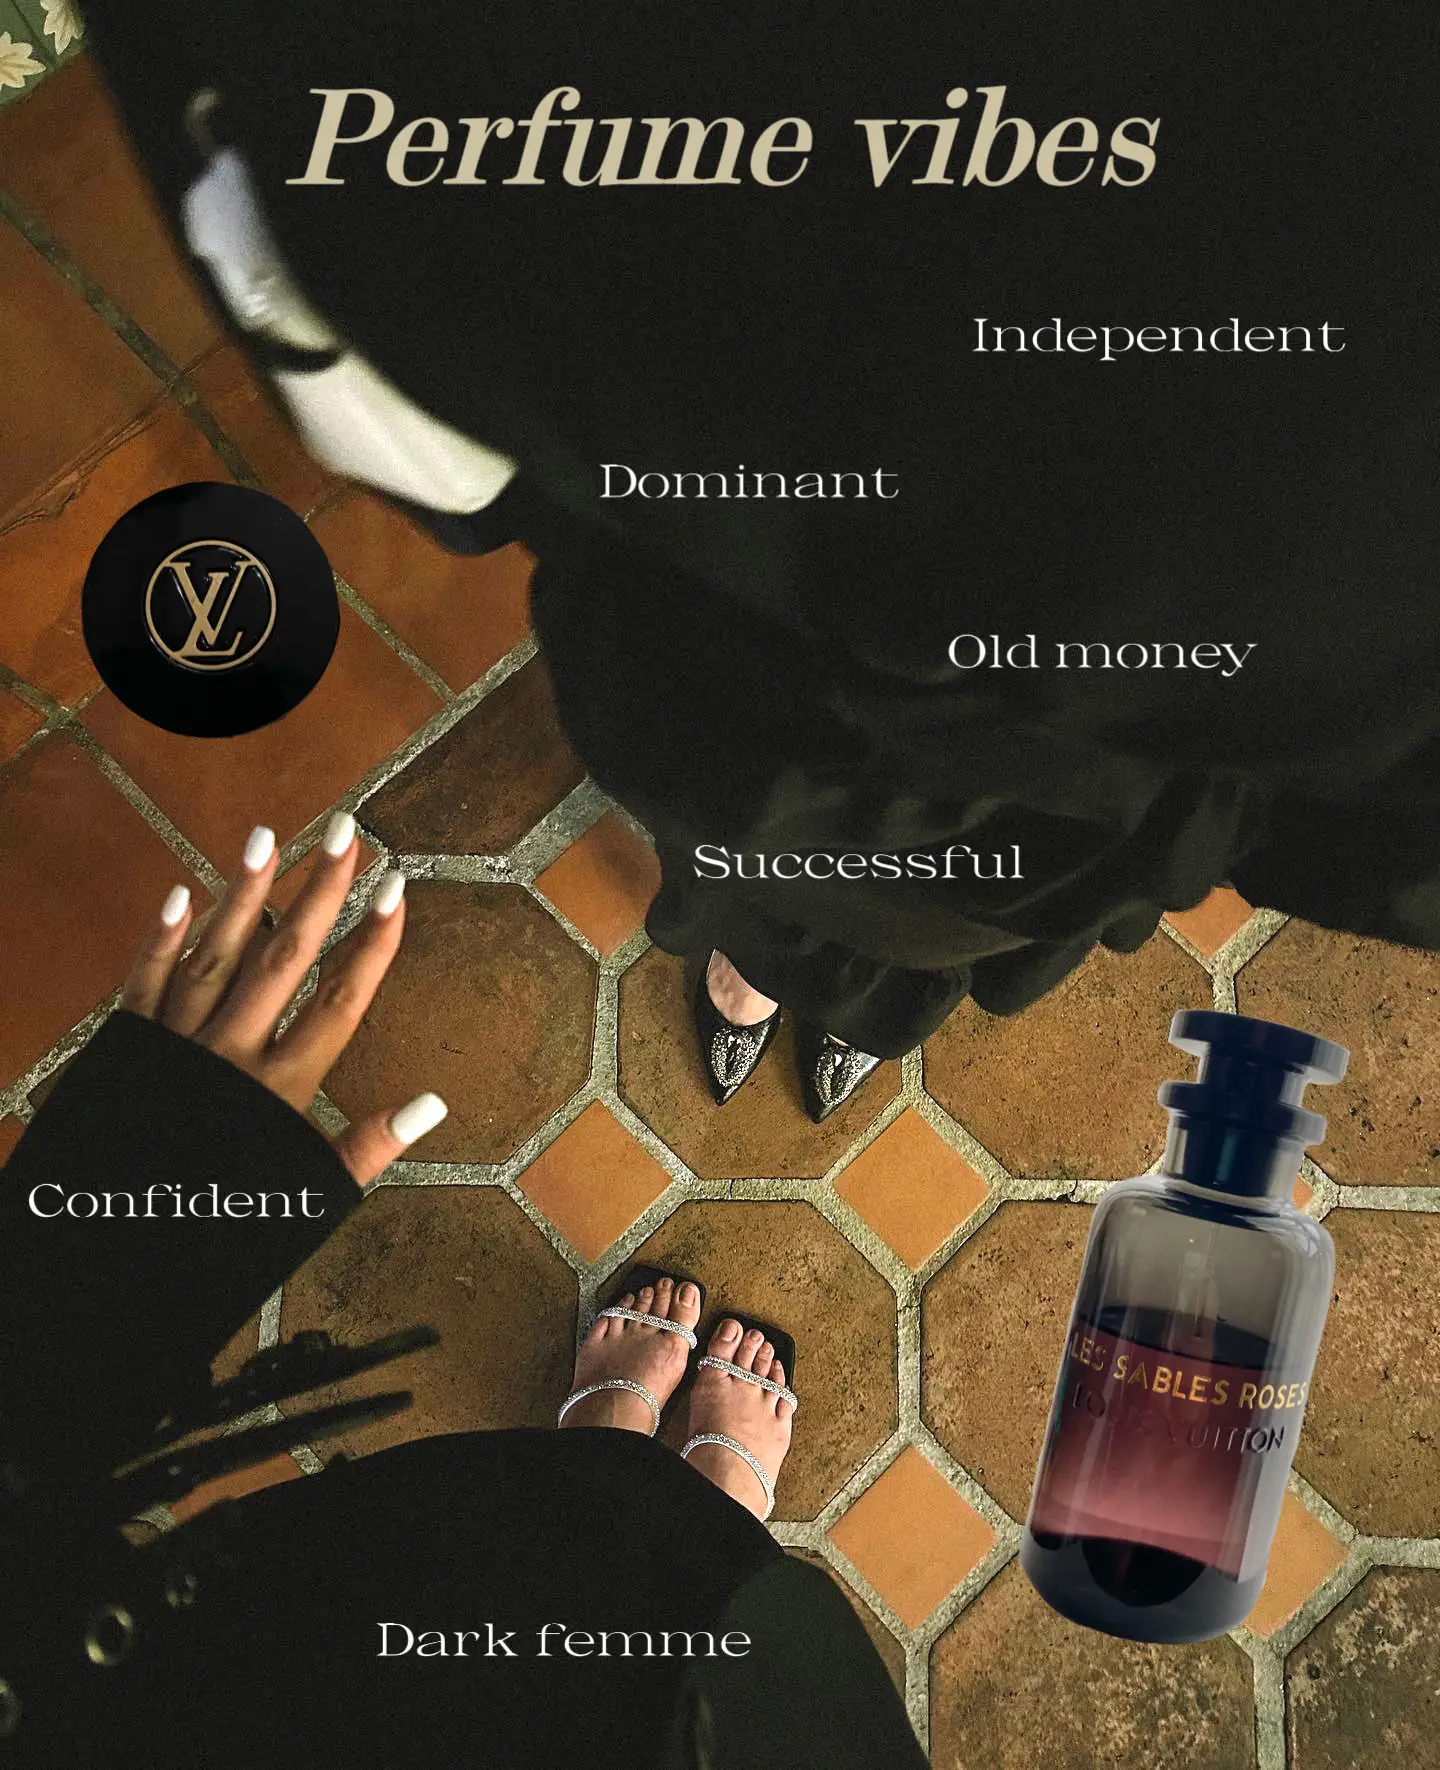 Jual Louis Vuitton Les Parfums for Men EDP Set Parfum Pria